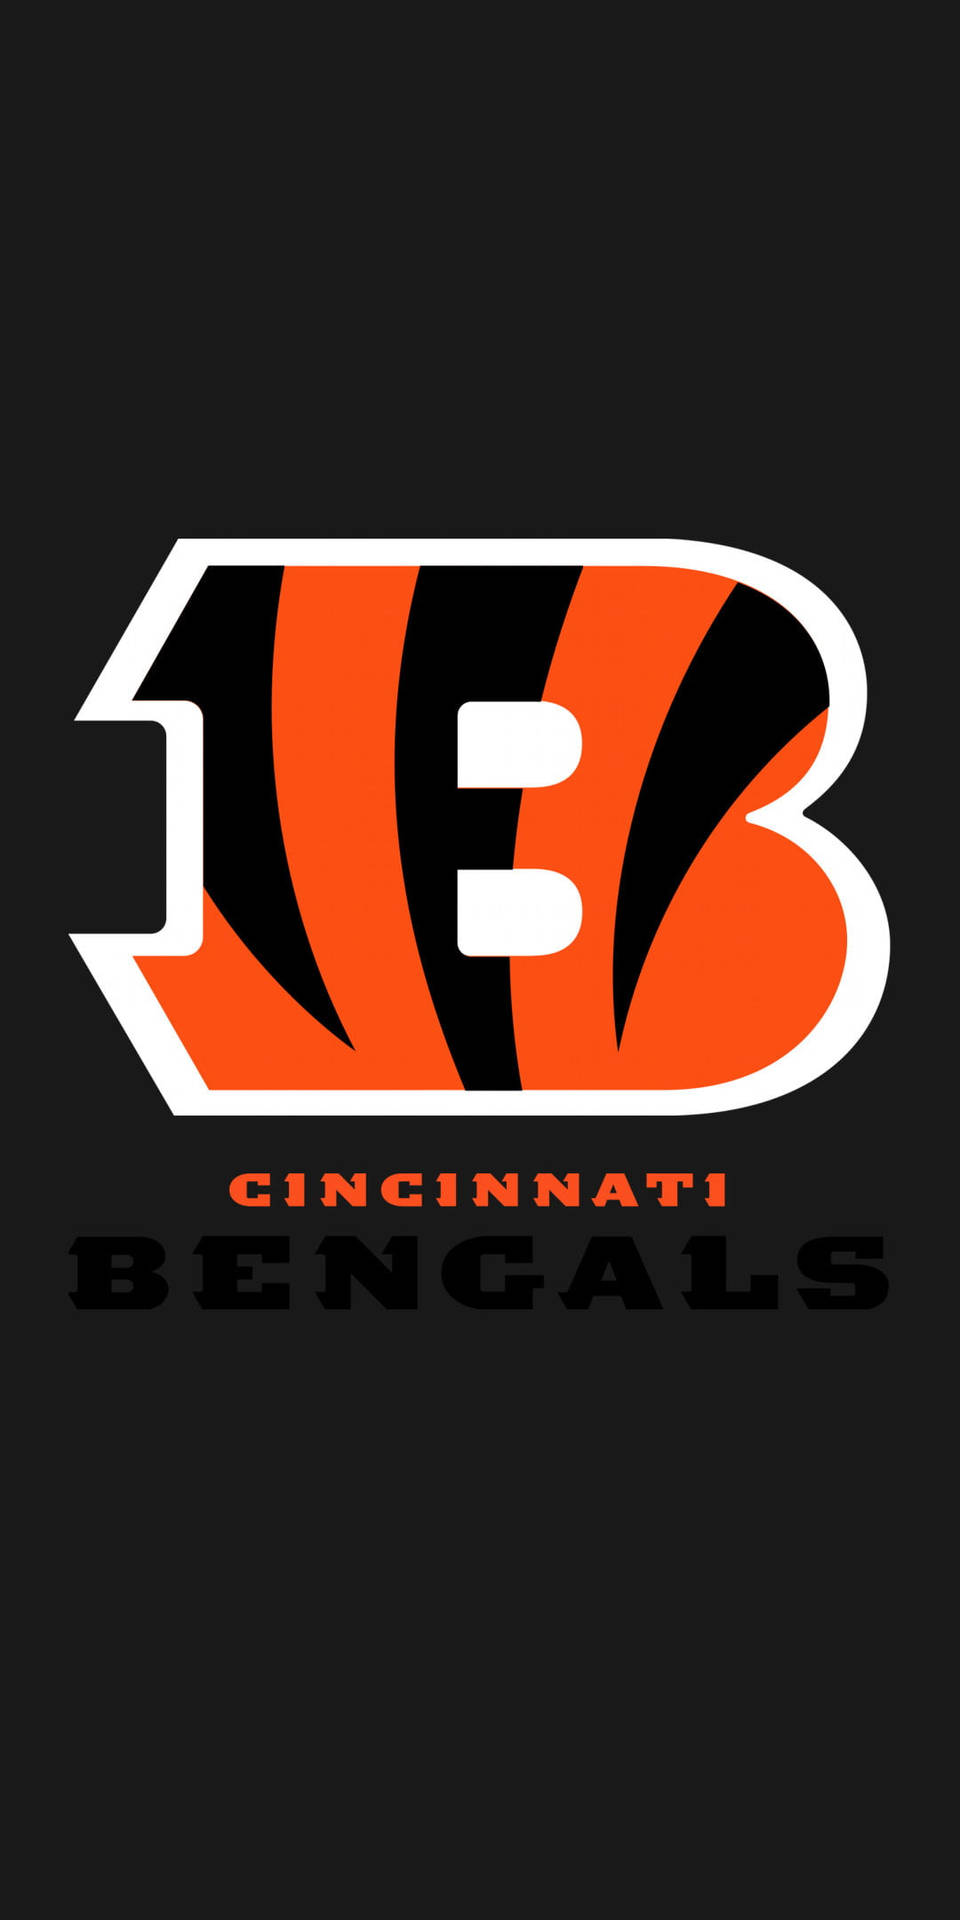 Cincinnati Bengals NFL Team Logo Wallpaper